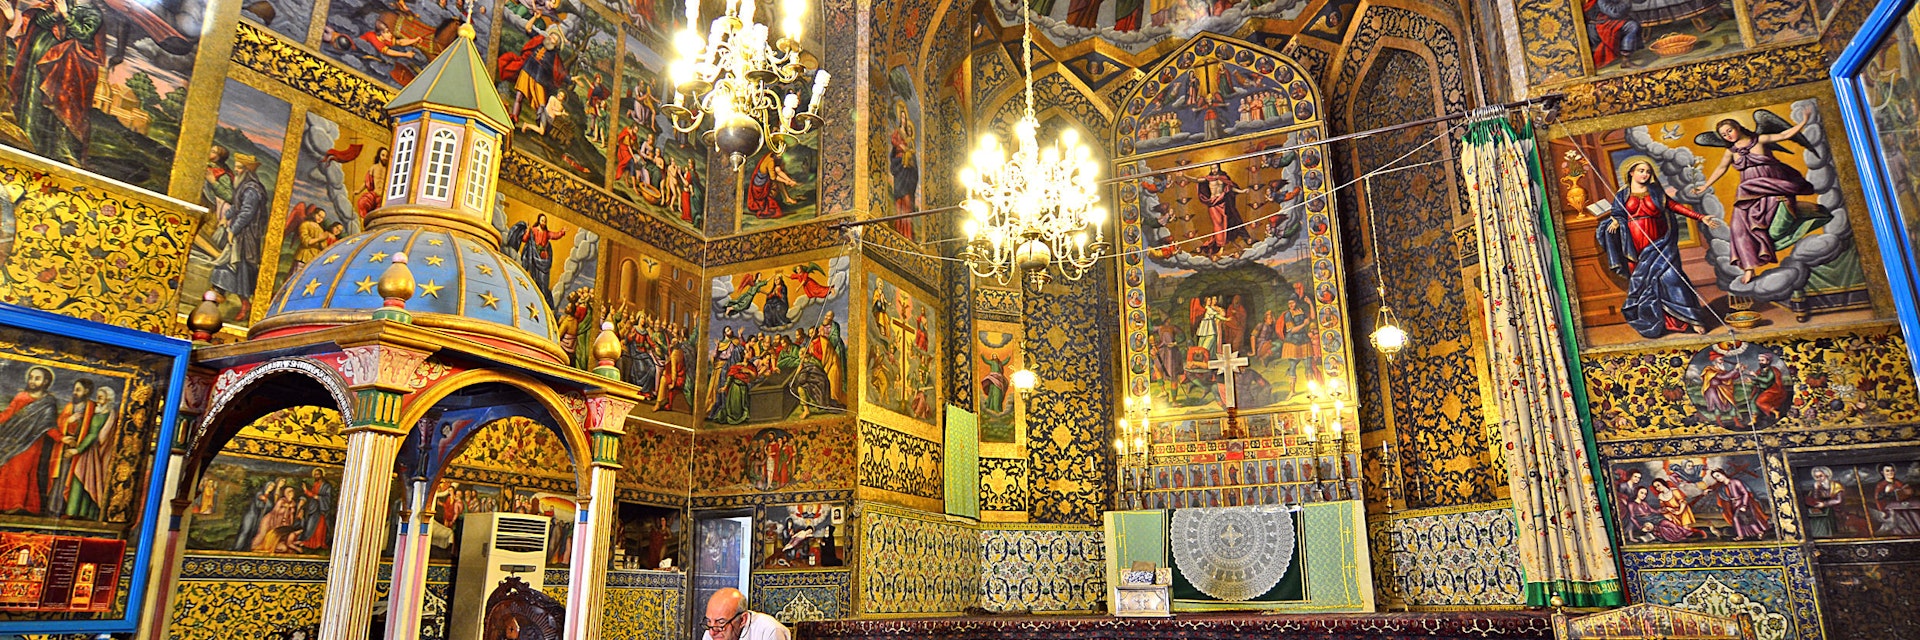 Armenian Cathedral Vank, October 6, 2014. Isfahan, Iran